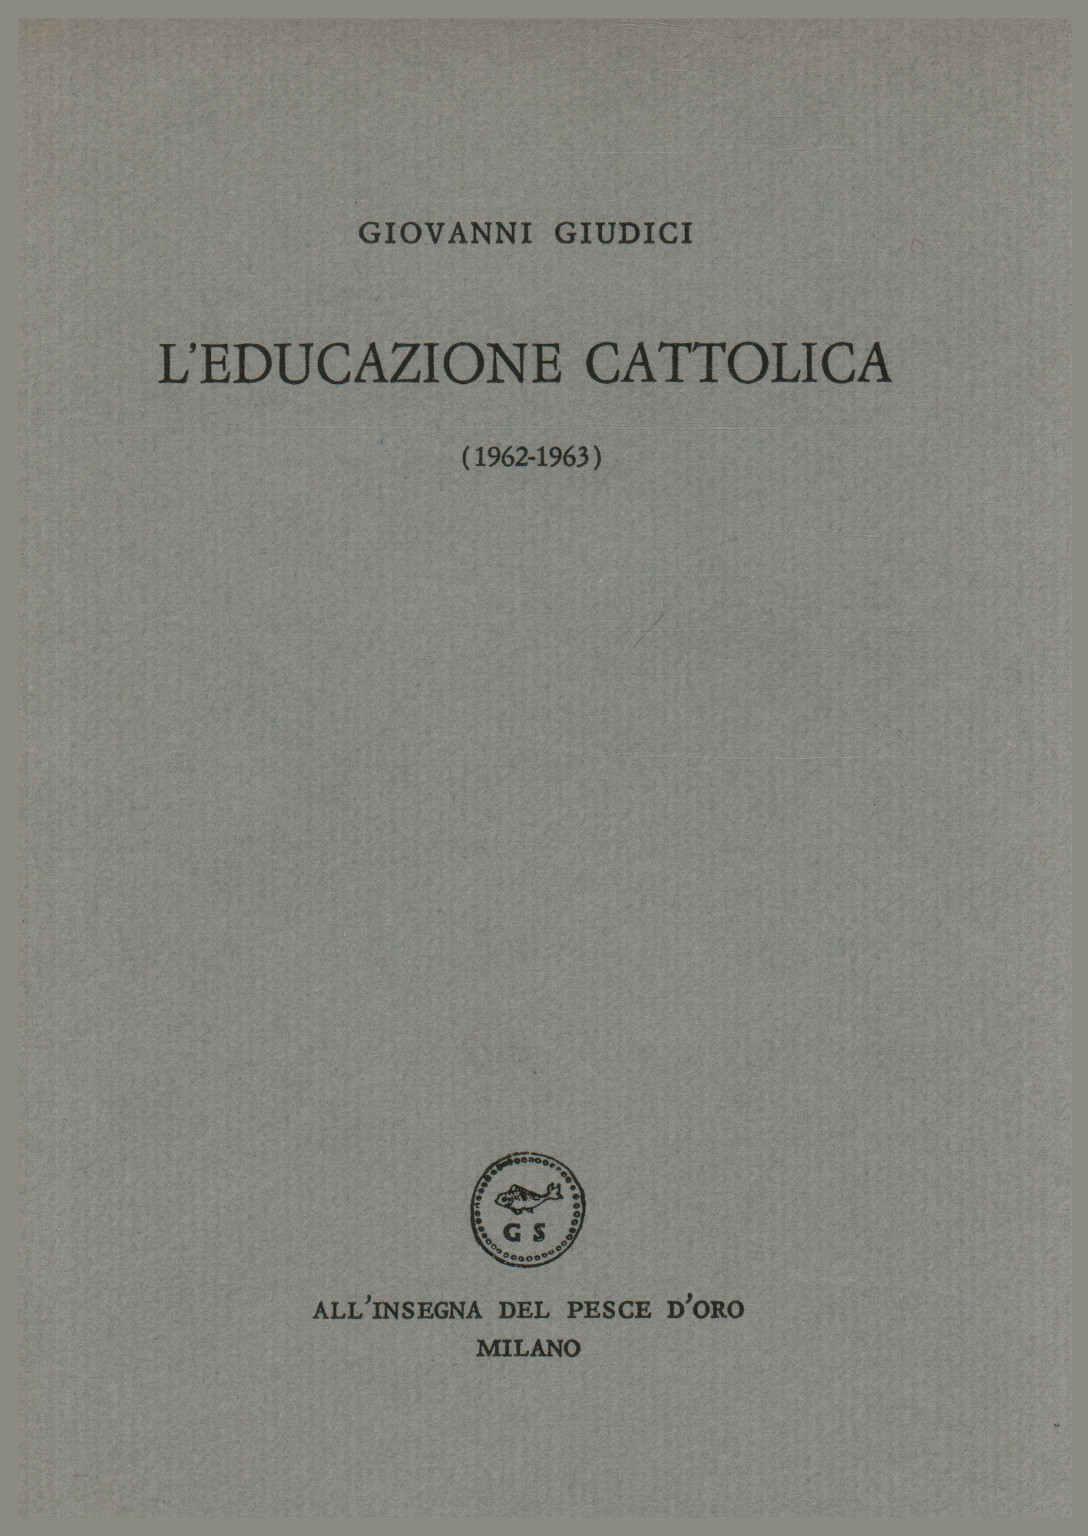 Enseignement catholique (1962-1963), s.a.